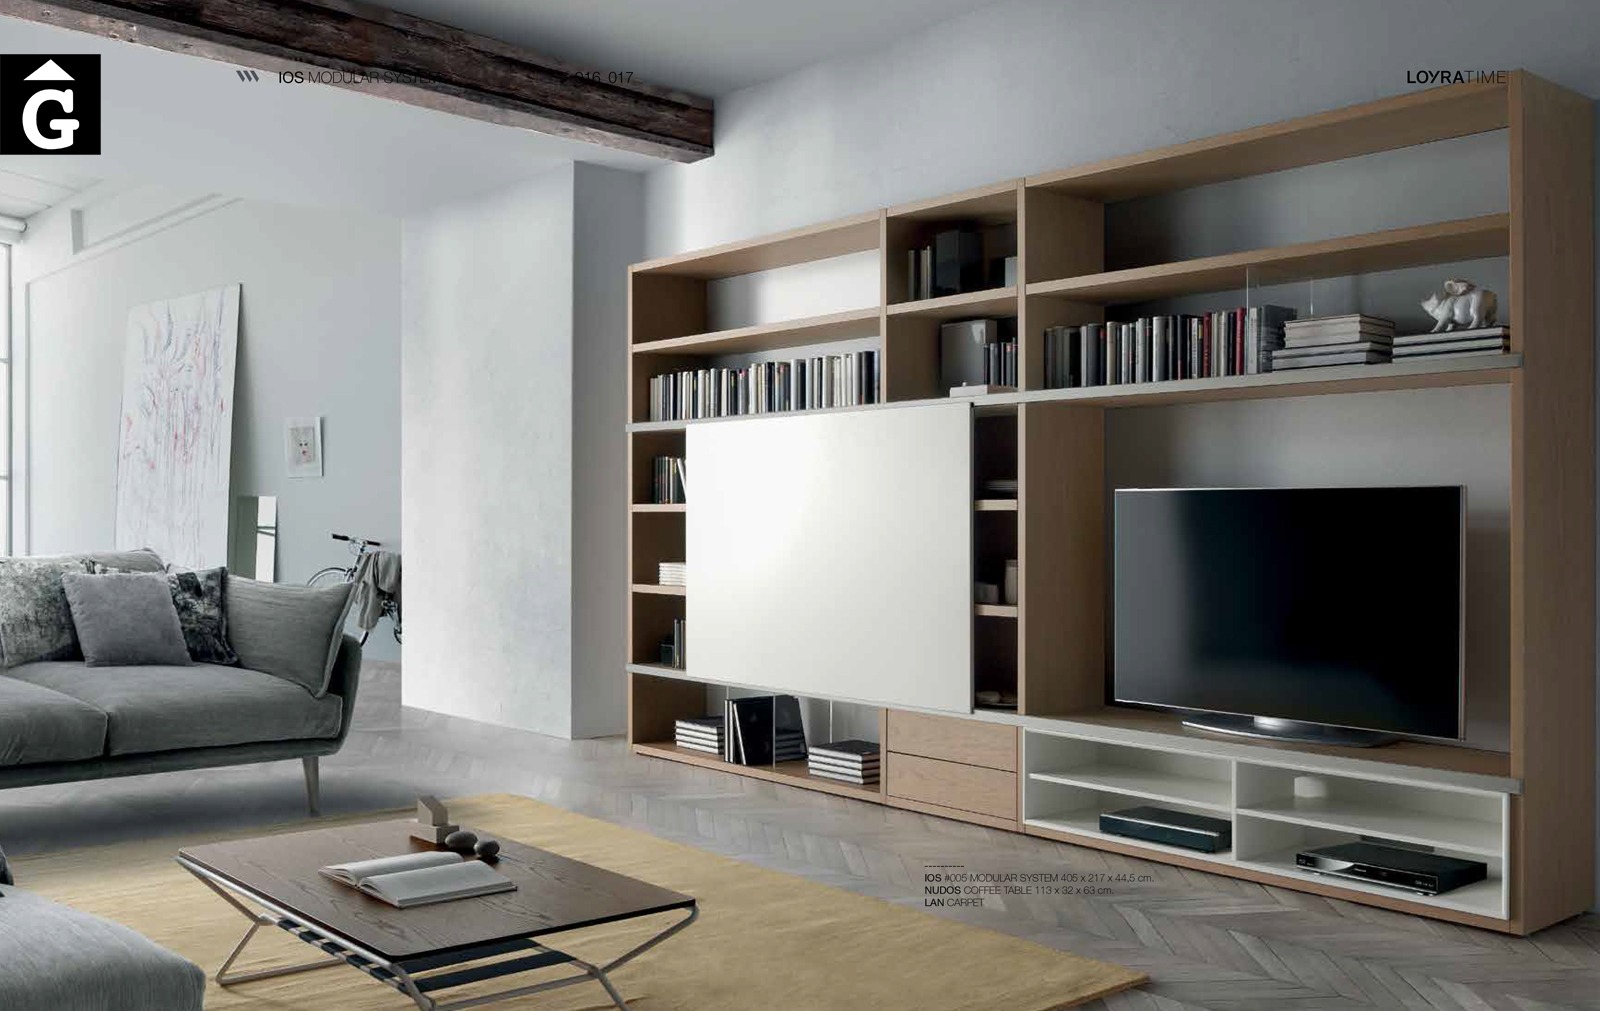 10 Loyra muebles by mobles Gifreu Idees per la llar moble de qualitat